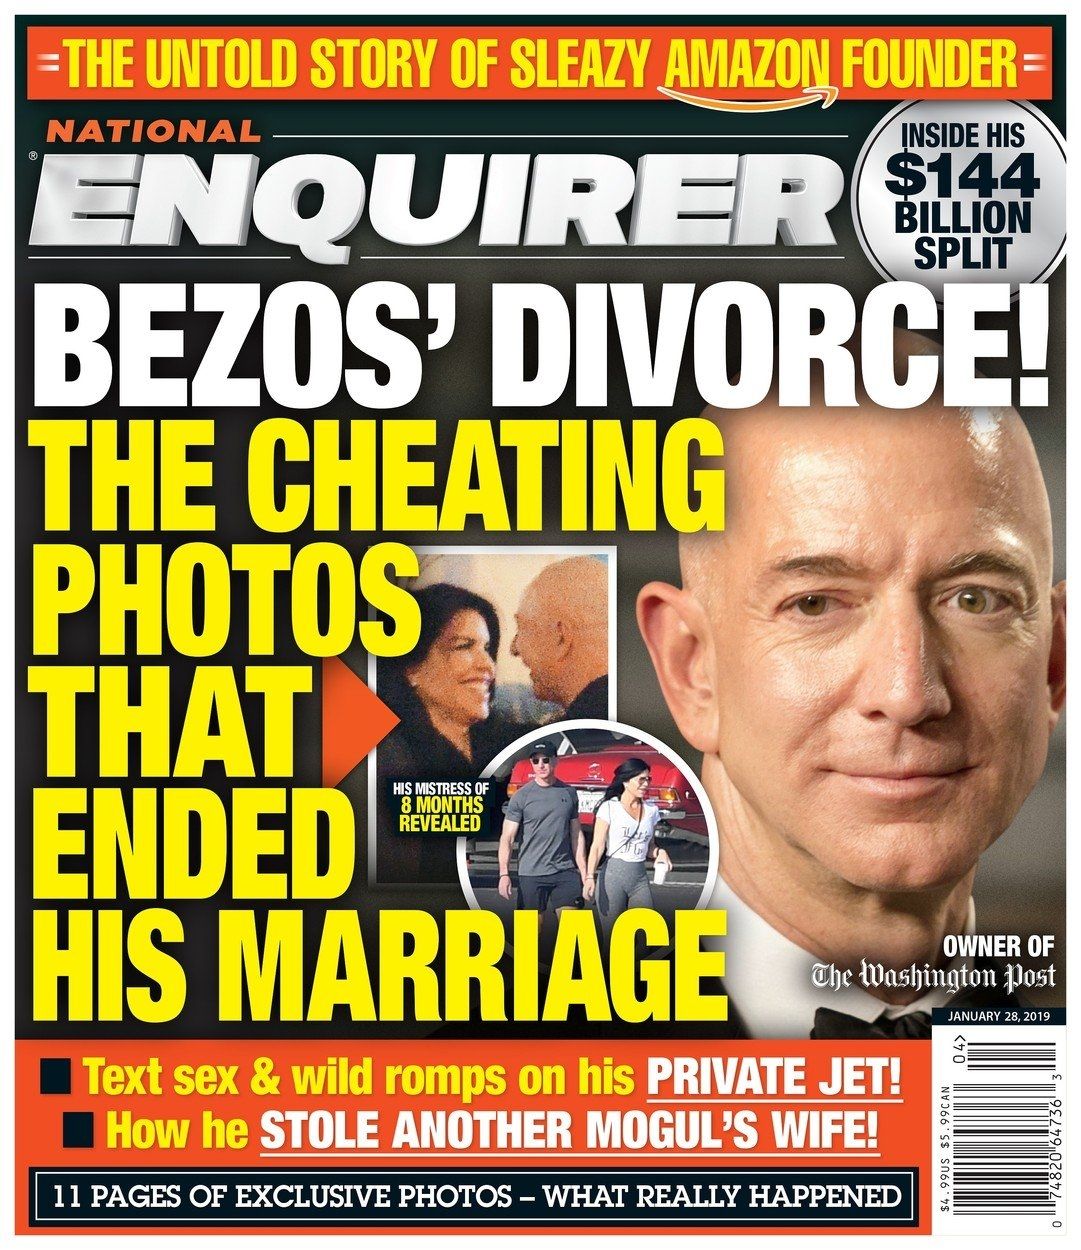 Úvodní strana bulvárního magazínu, který slibuje velké skandální odhalení Bezosovy aféry.